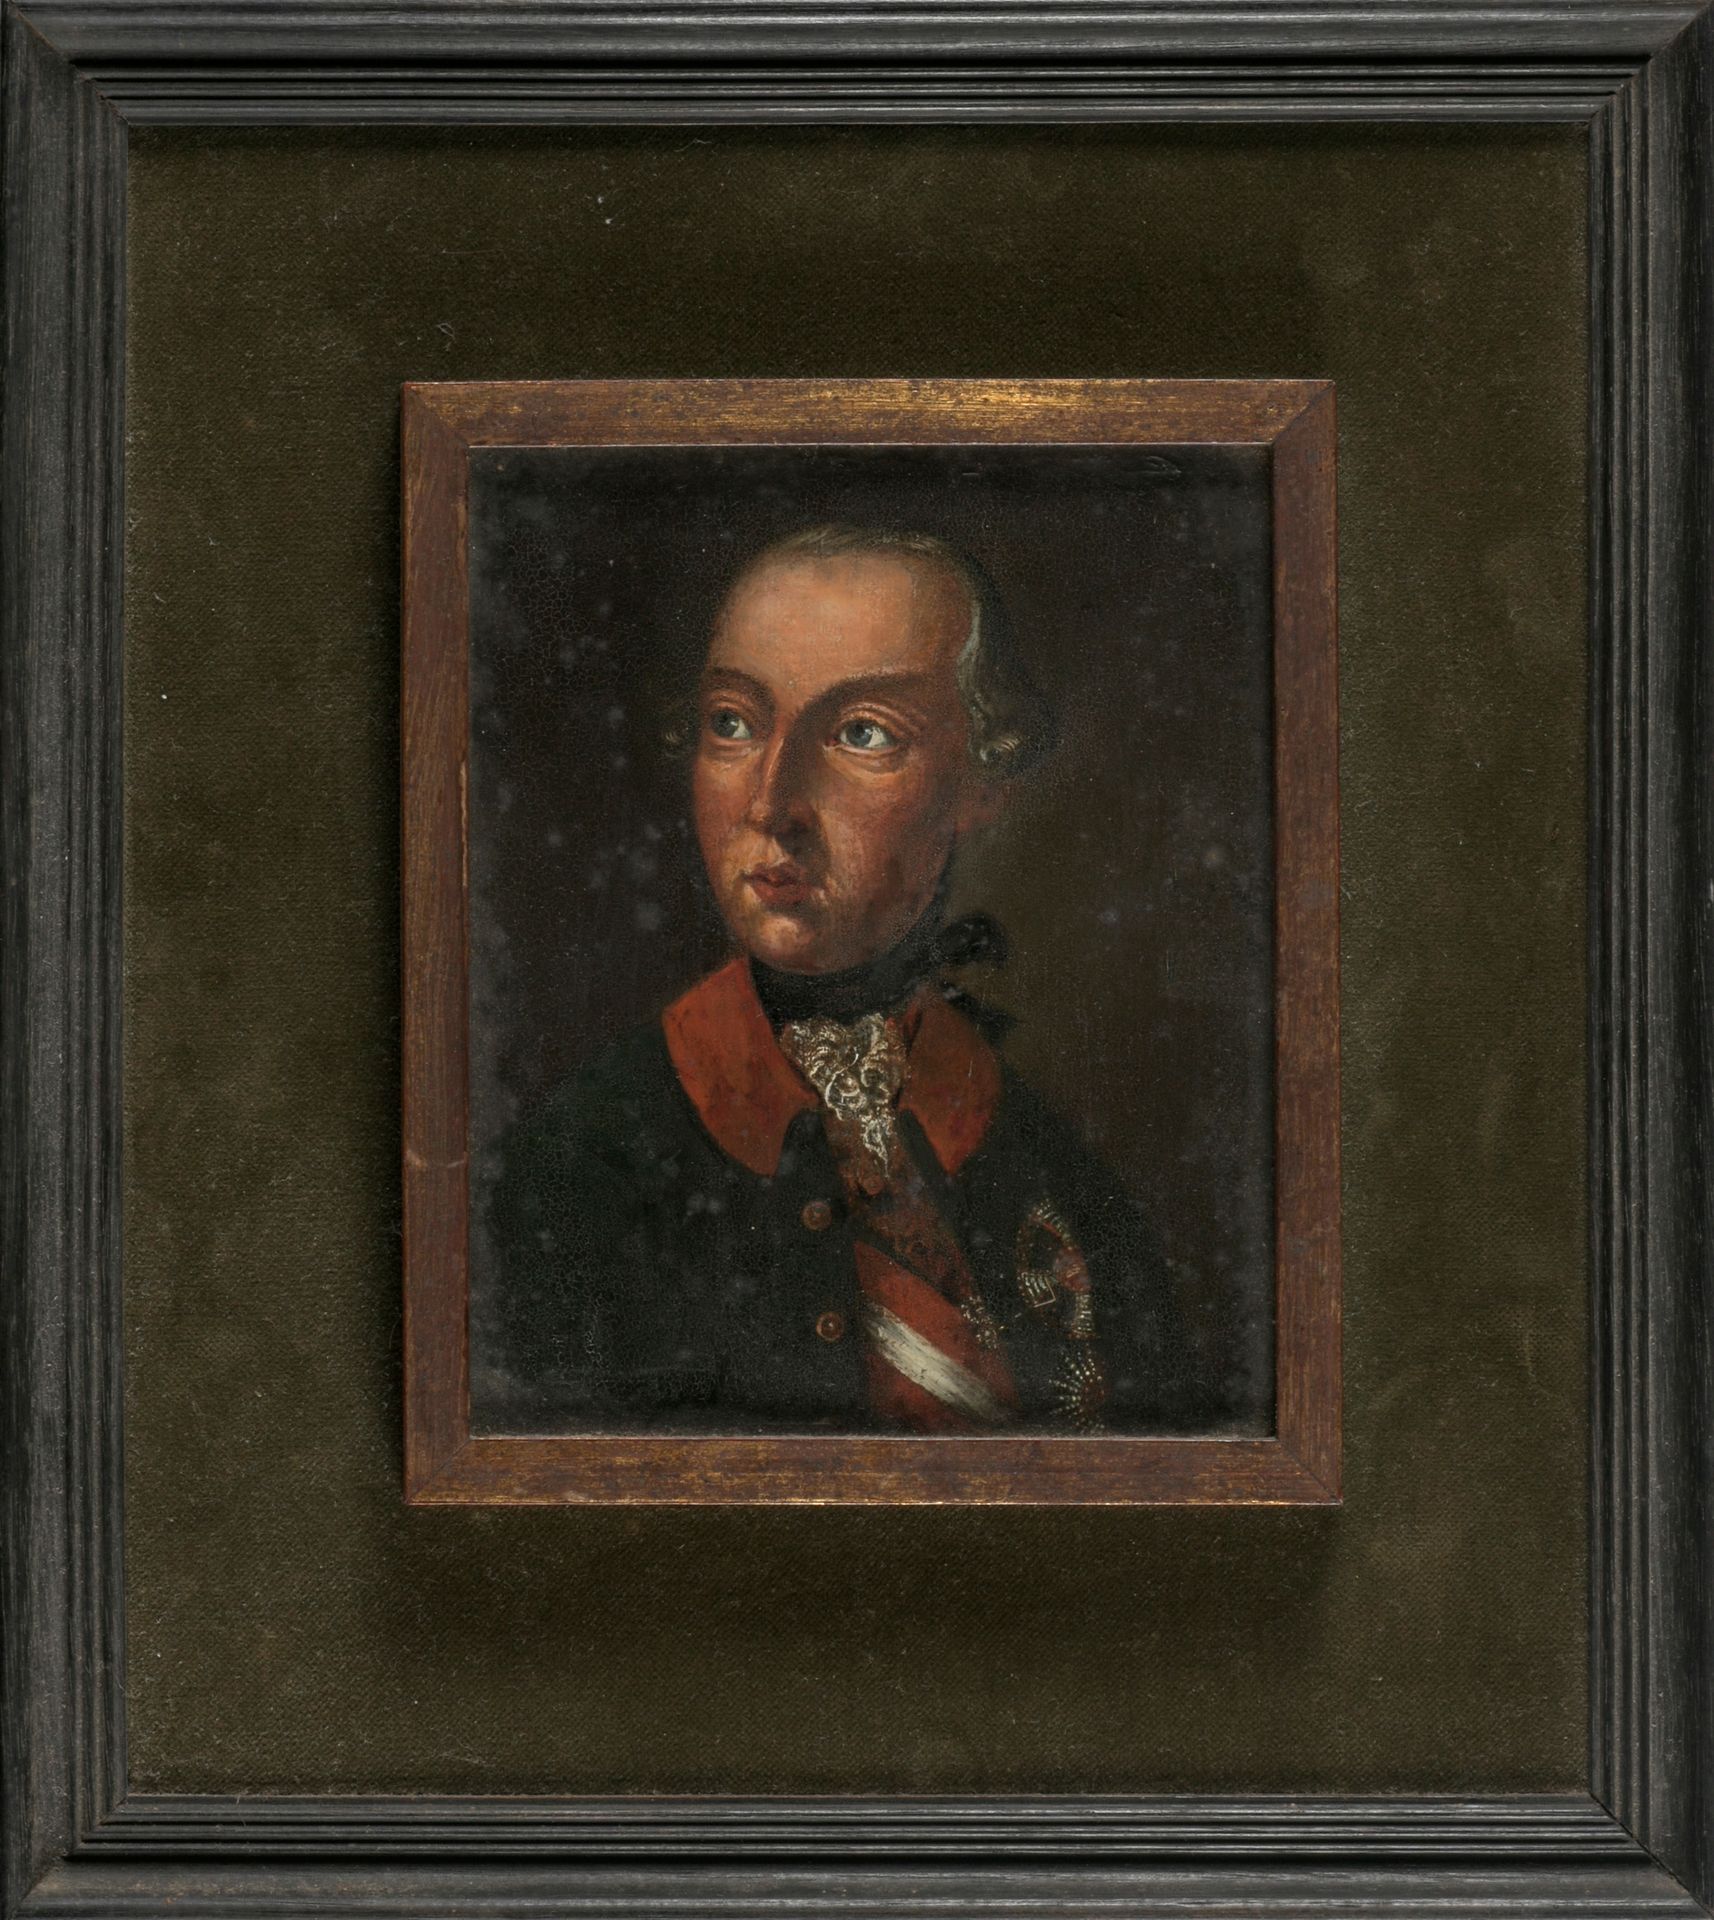 [PORTRET] 
贵族





铜板油画（15 x 12厘米），无名氏，18世纪，旧框架

可能是约瑟夫二世的画像